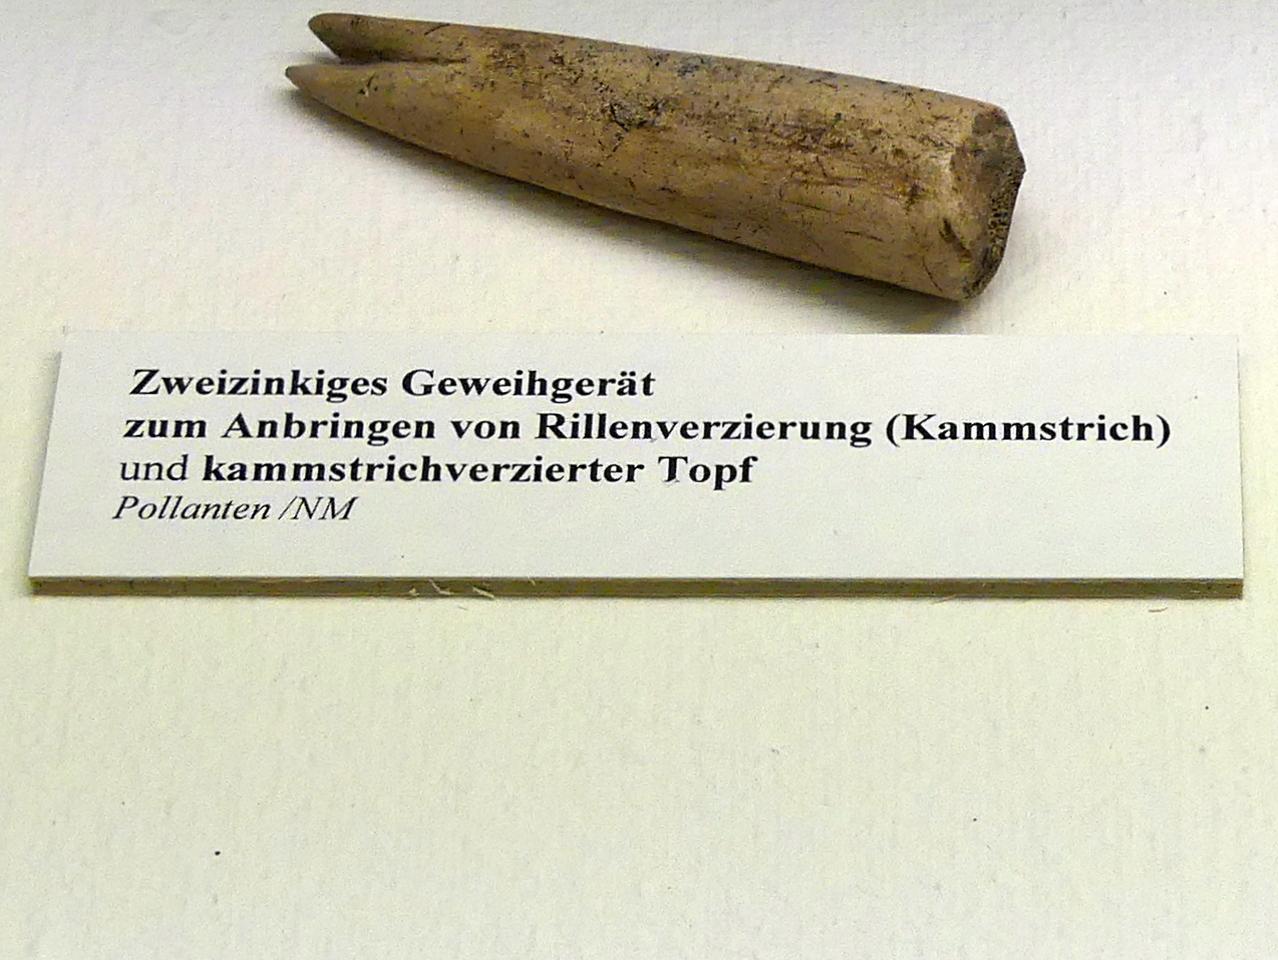 Zweizinkiges Geweihgerät, Spätlatènezeit D, 700 - 100 v. Chr., Bild 2/2